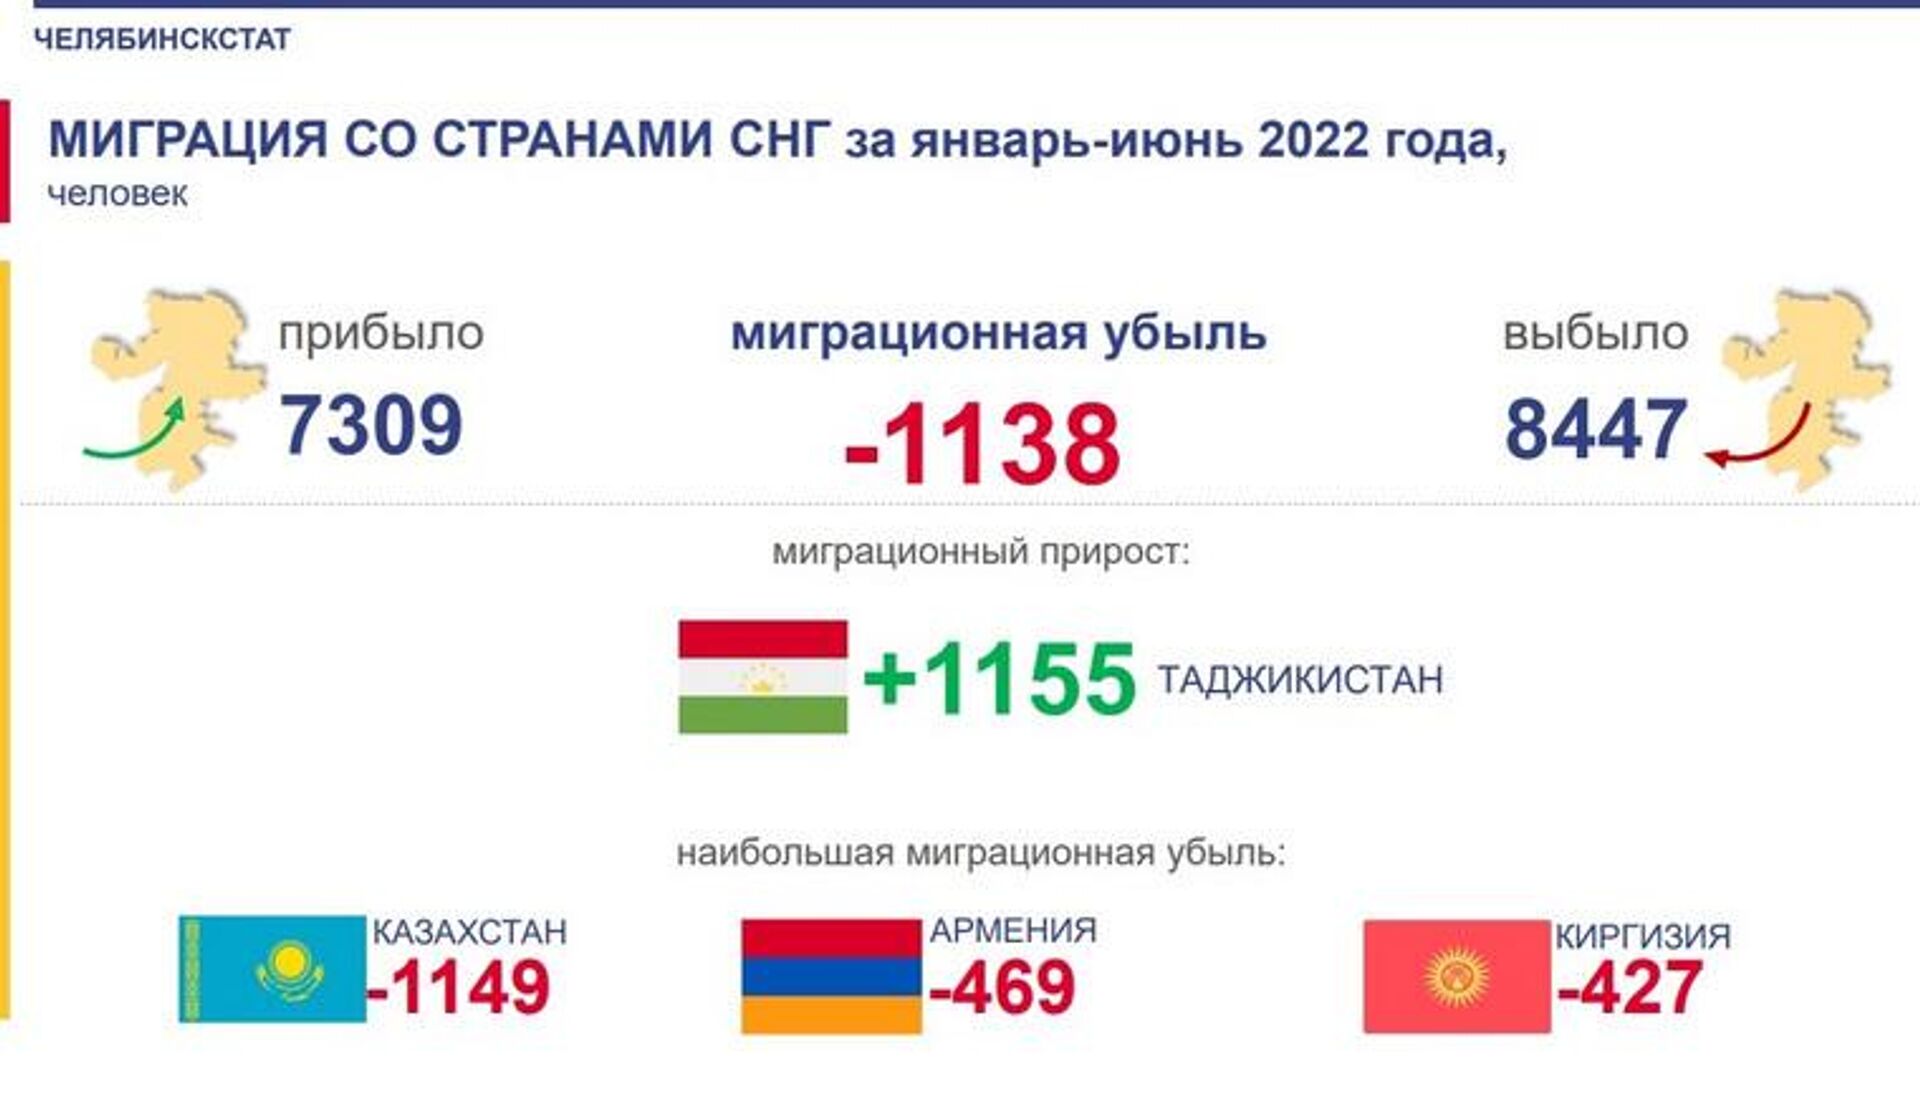 Миграционная статистика по Челябинску 2022 год - Sputnik Таджикистан, 1920, 17.08.2022